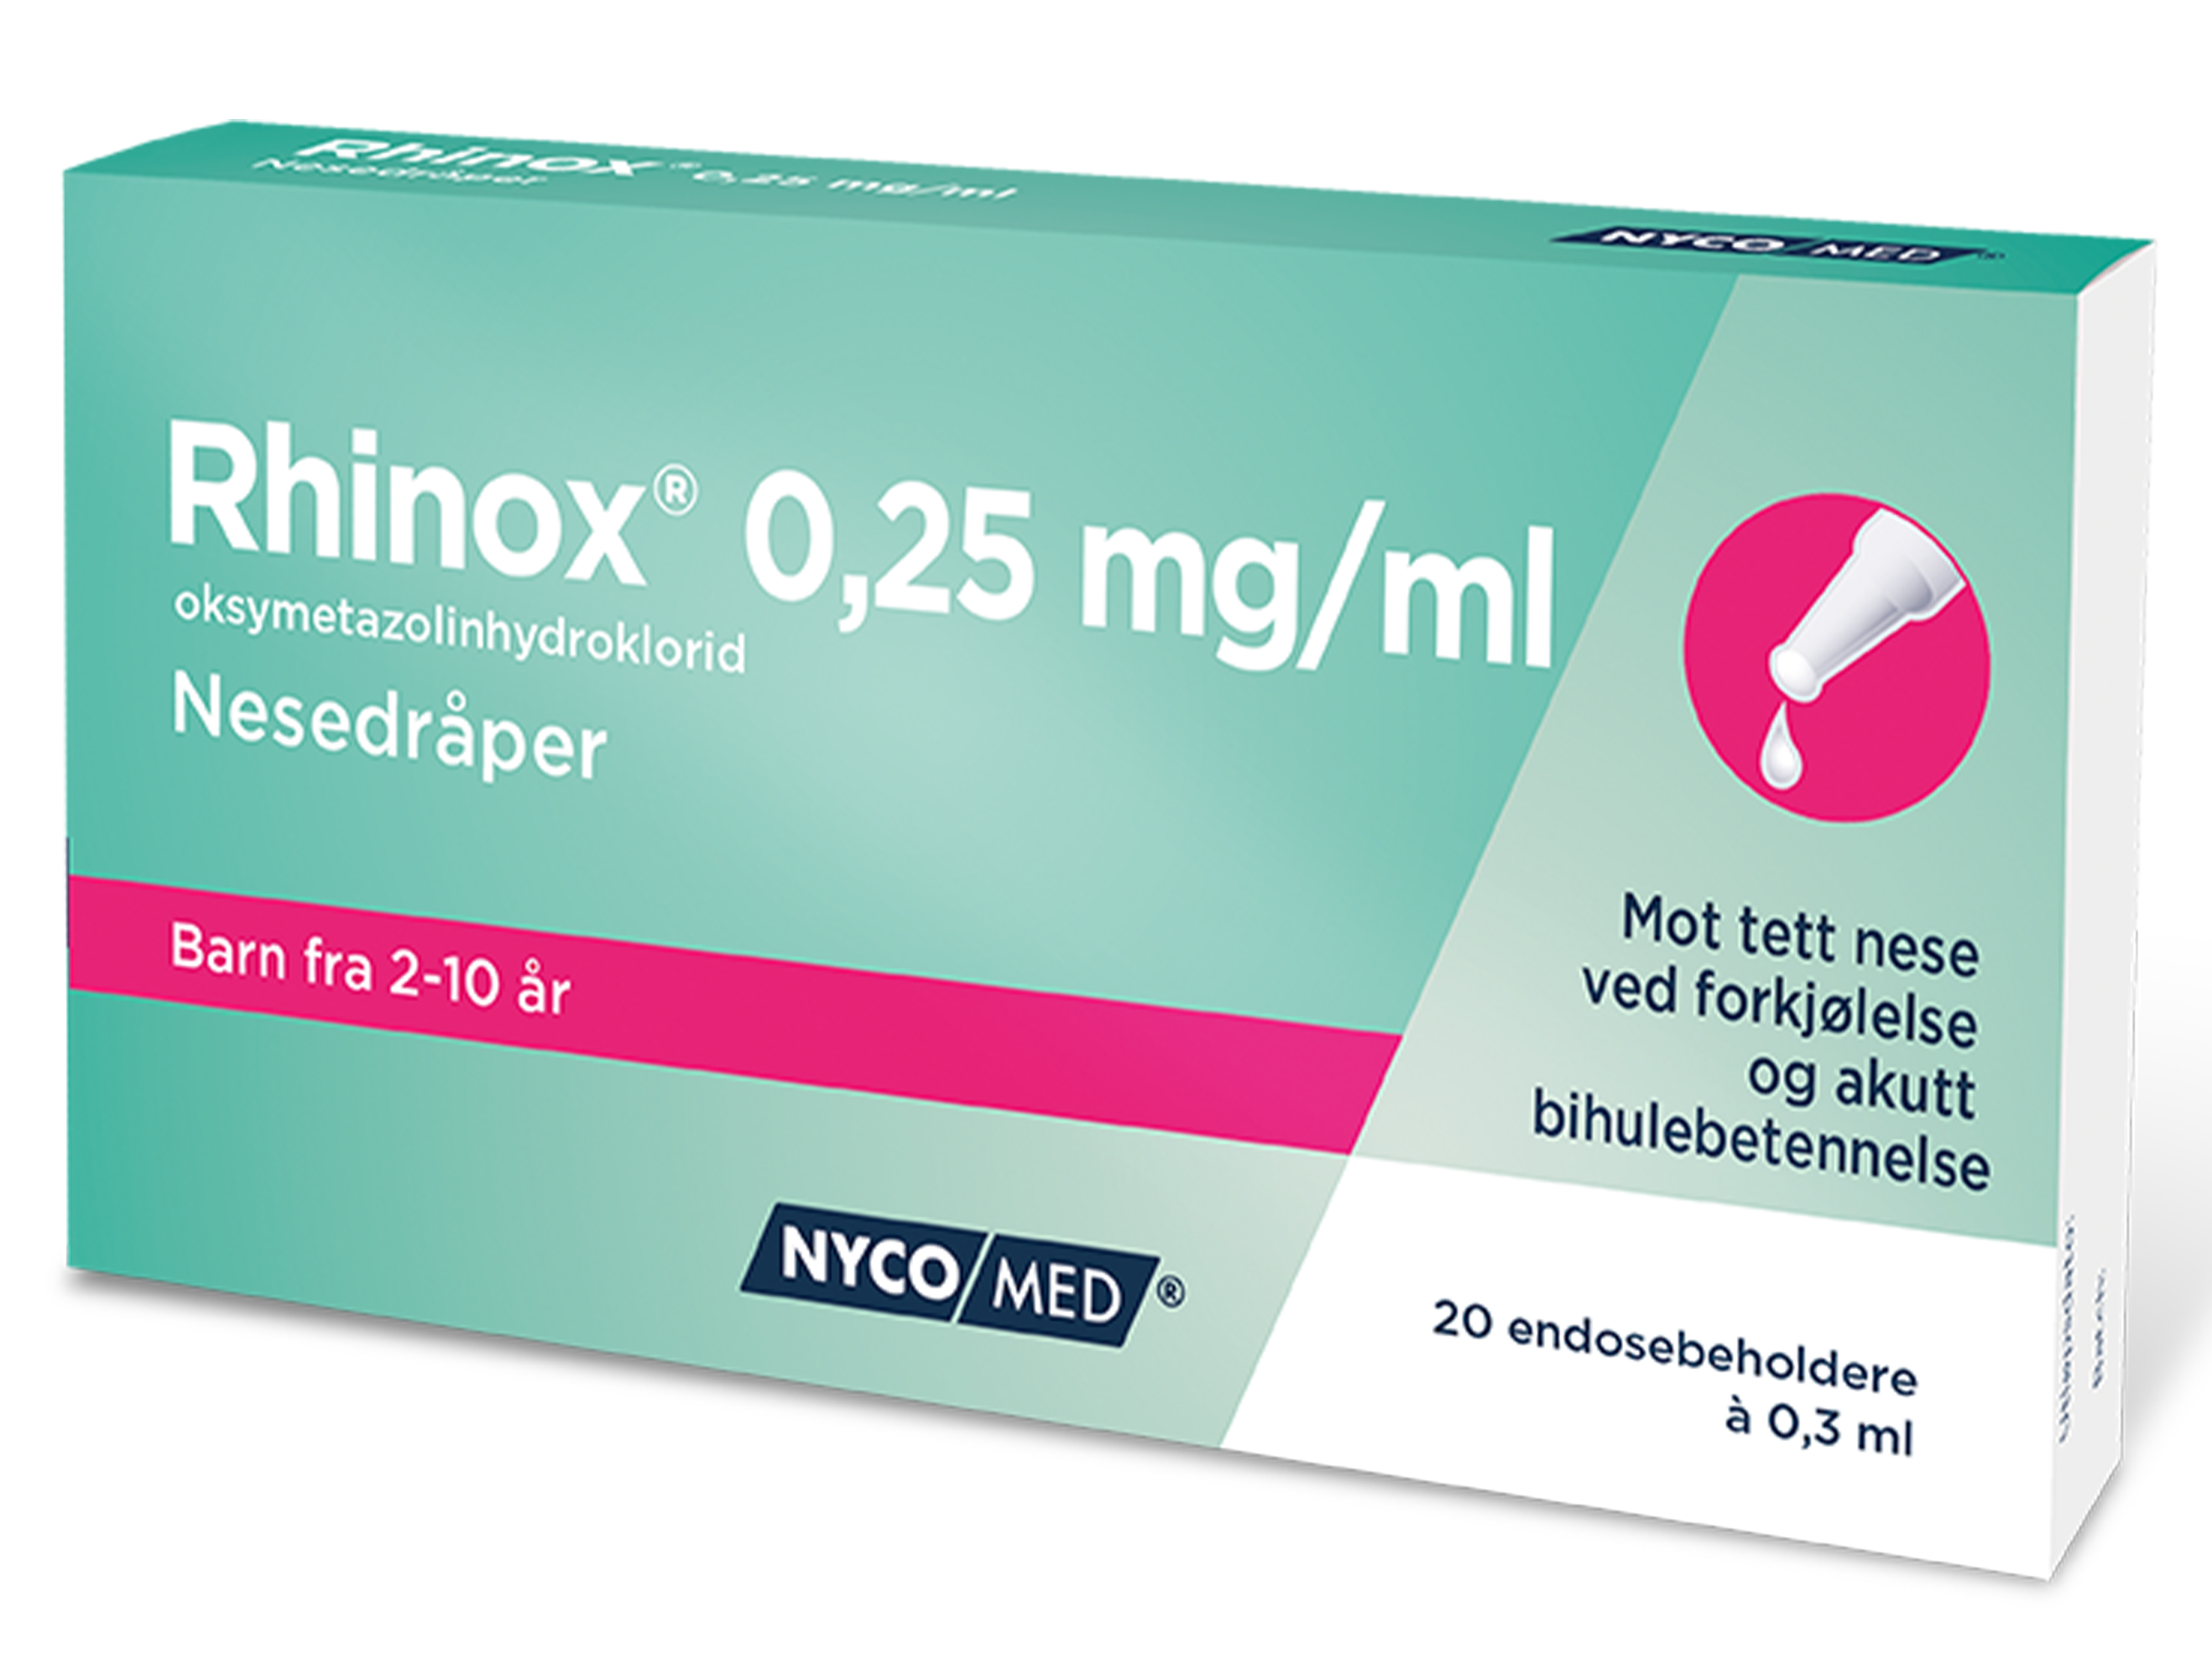 Rhinox Nesedråper, 0,25 mg/ml til barn, 20 endoser